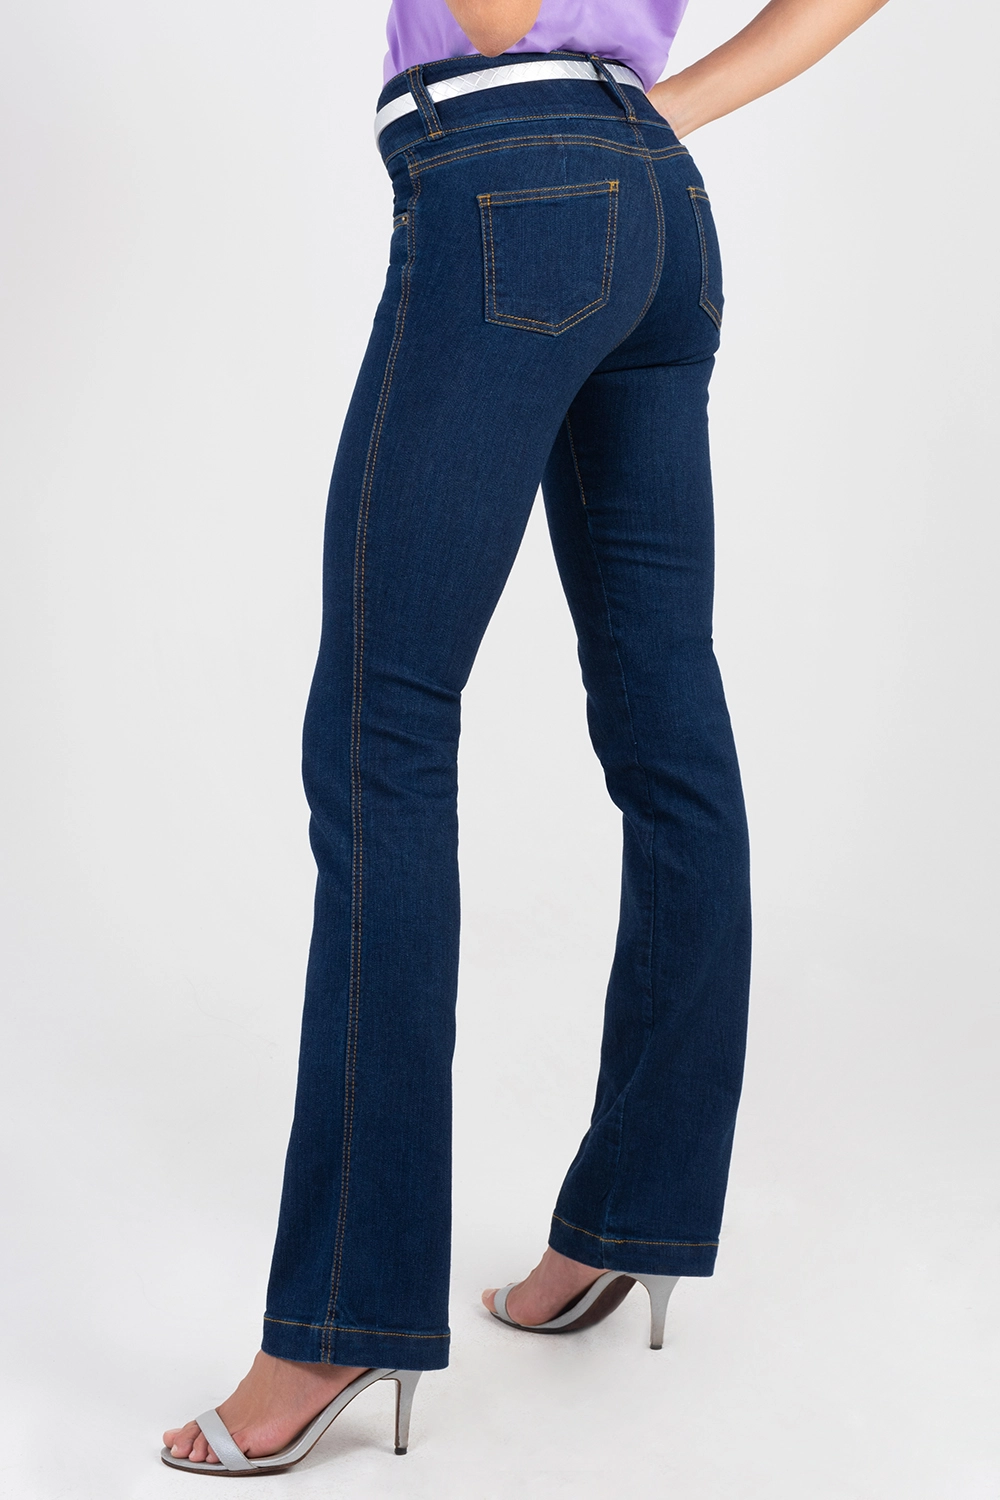 Jean básico cinco bolsillos, bota recta, pretina ancha. Azul oscuro talla 14